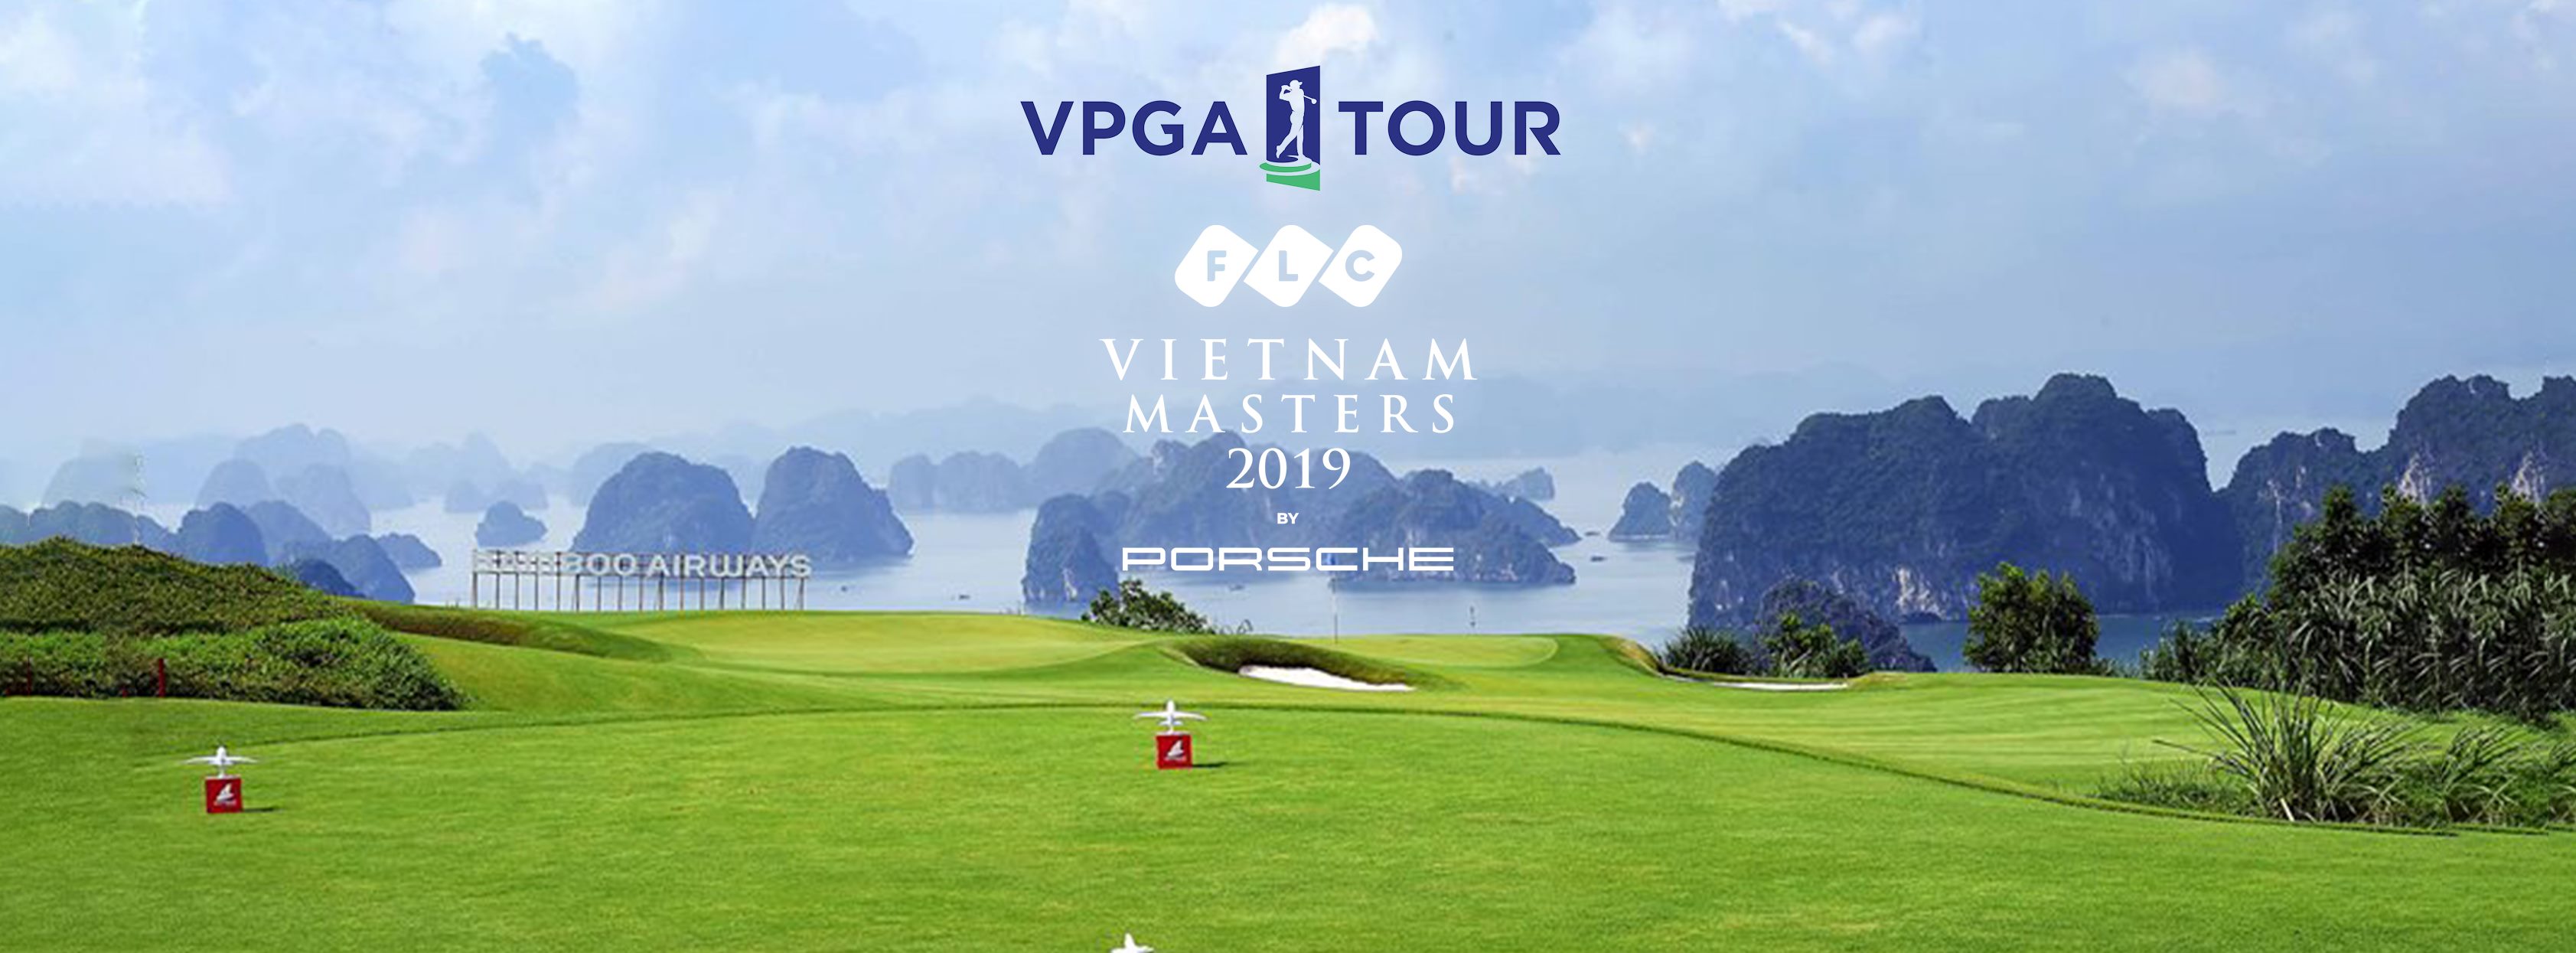 FLC Vietnam Masters 2019 presented by Porsche chào đón 94 golfer tham dự giải